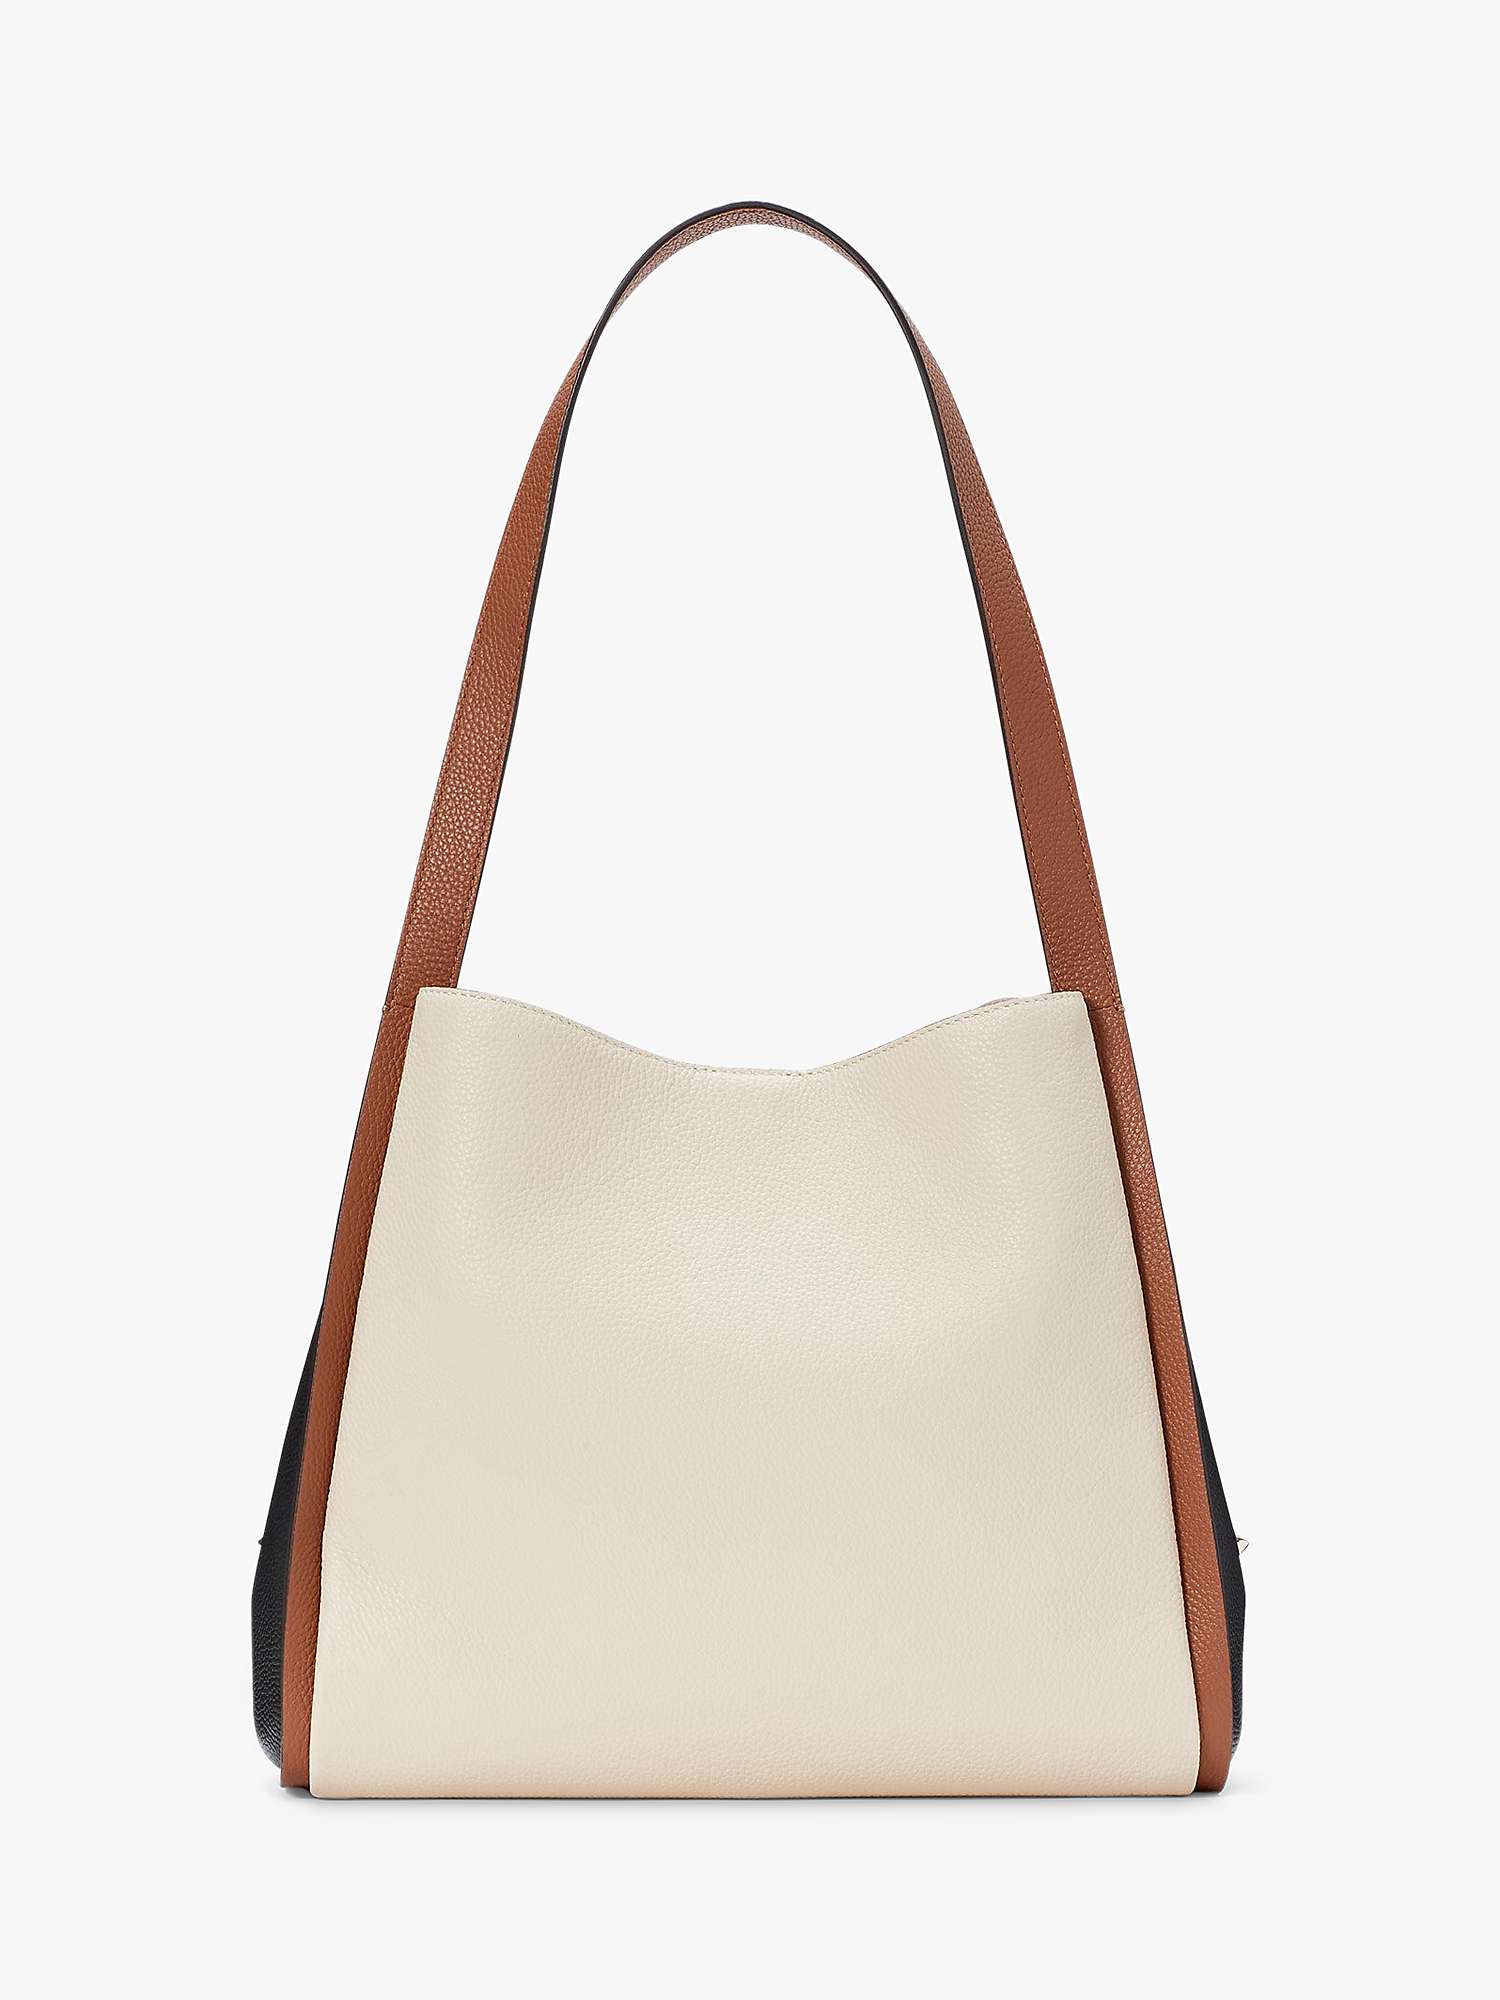 Buy kate spade new york Knott Leather Shoulder Bag Online at johnlewis.com